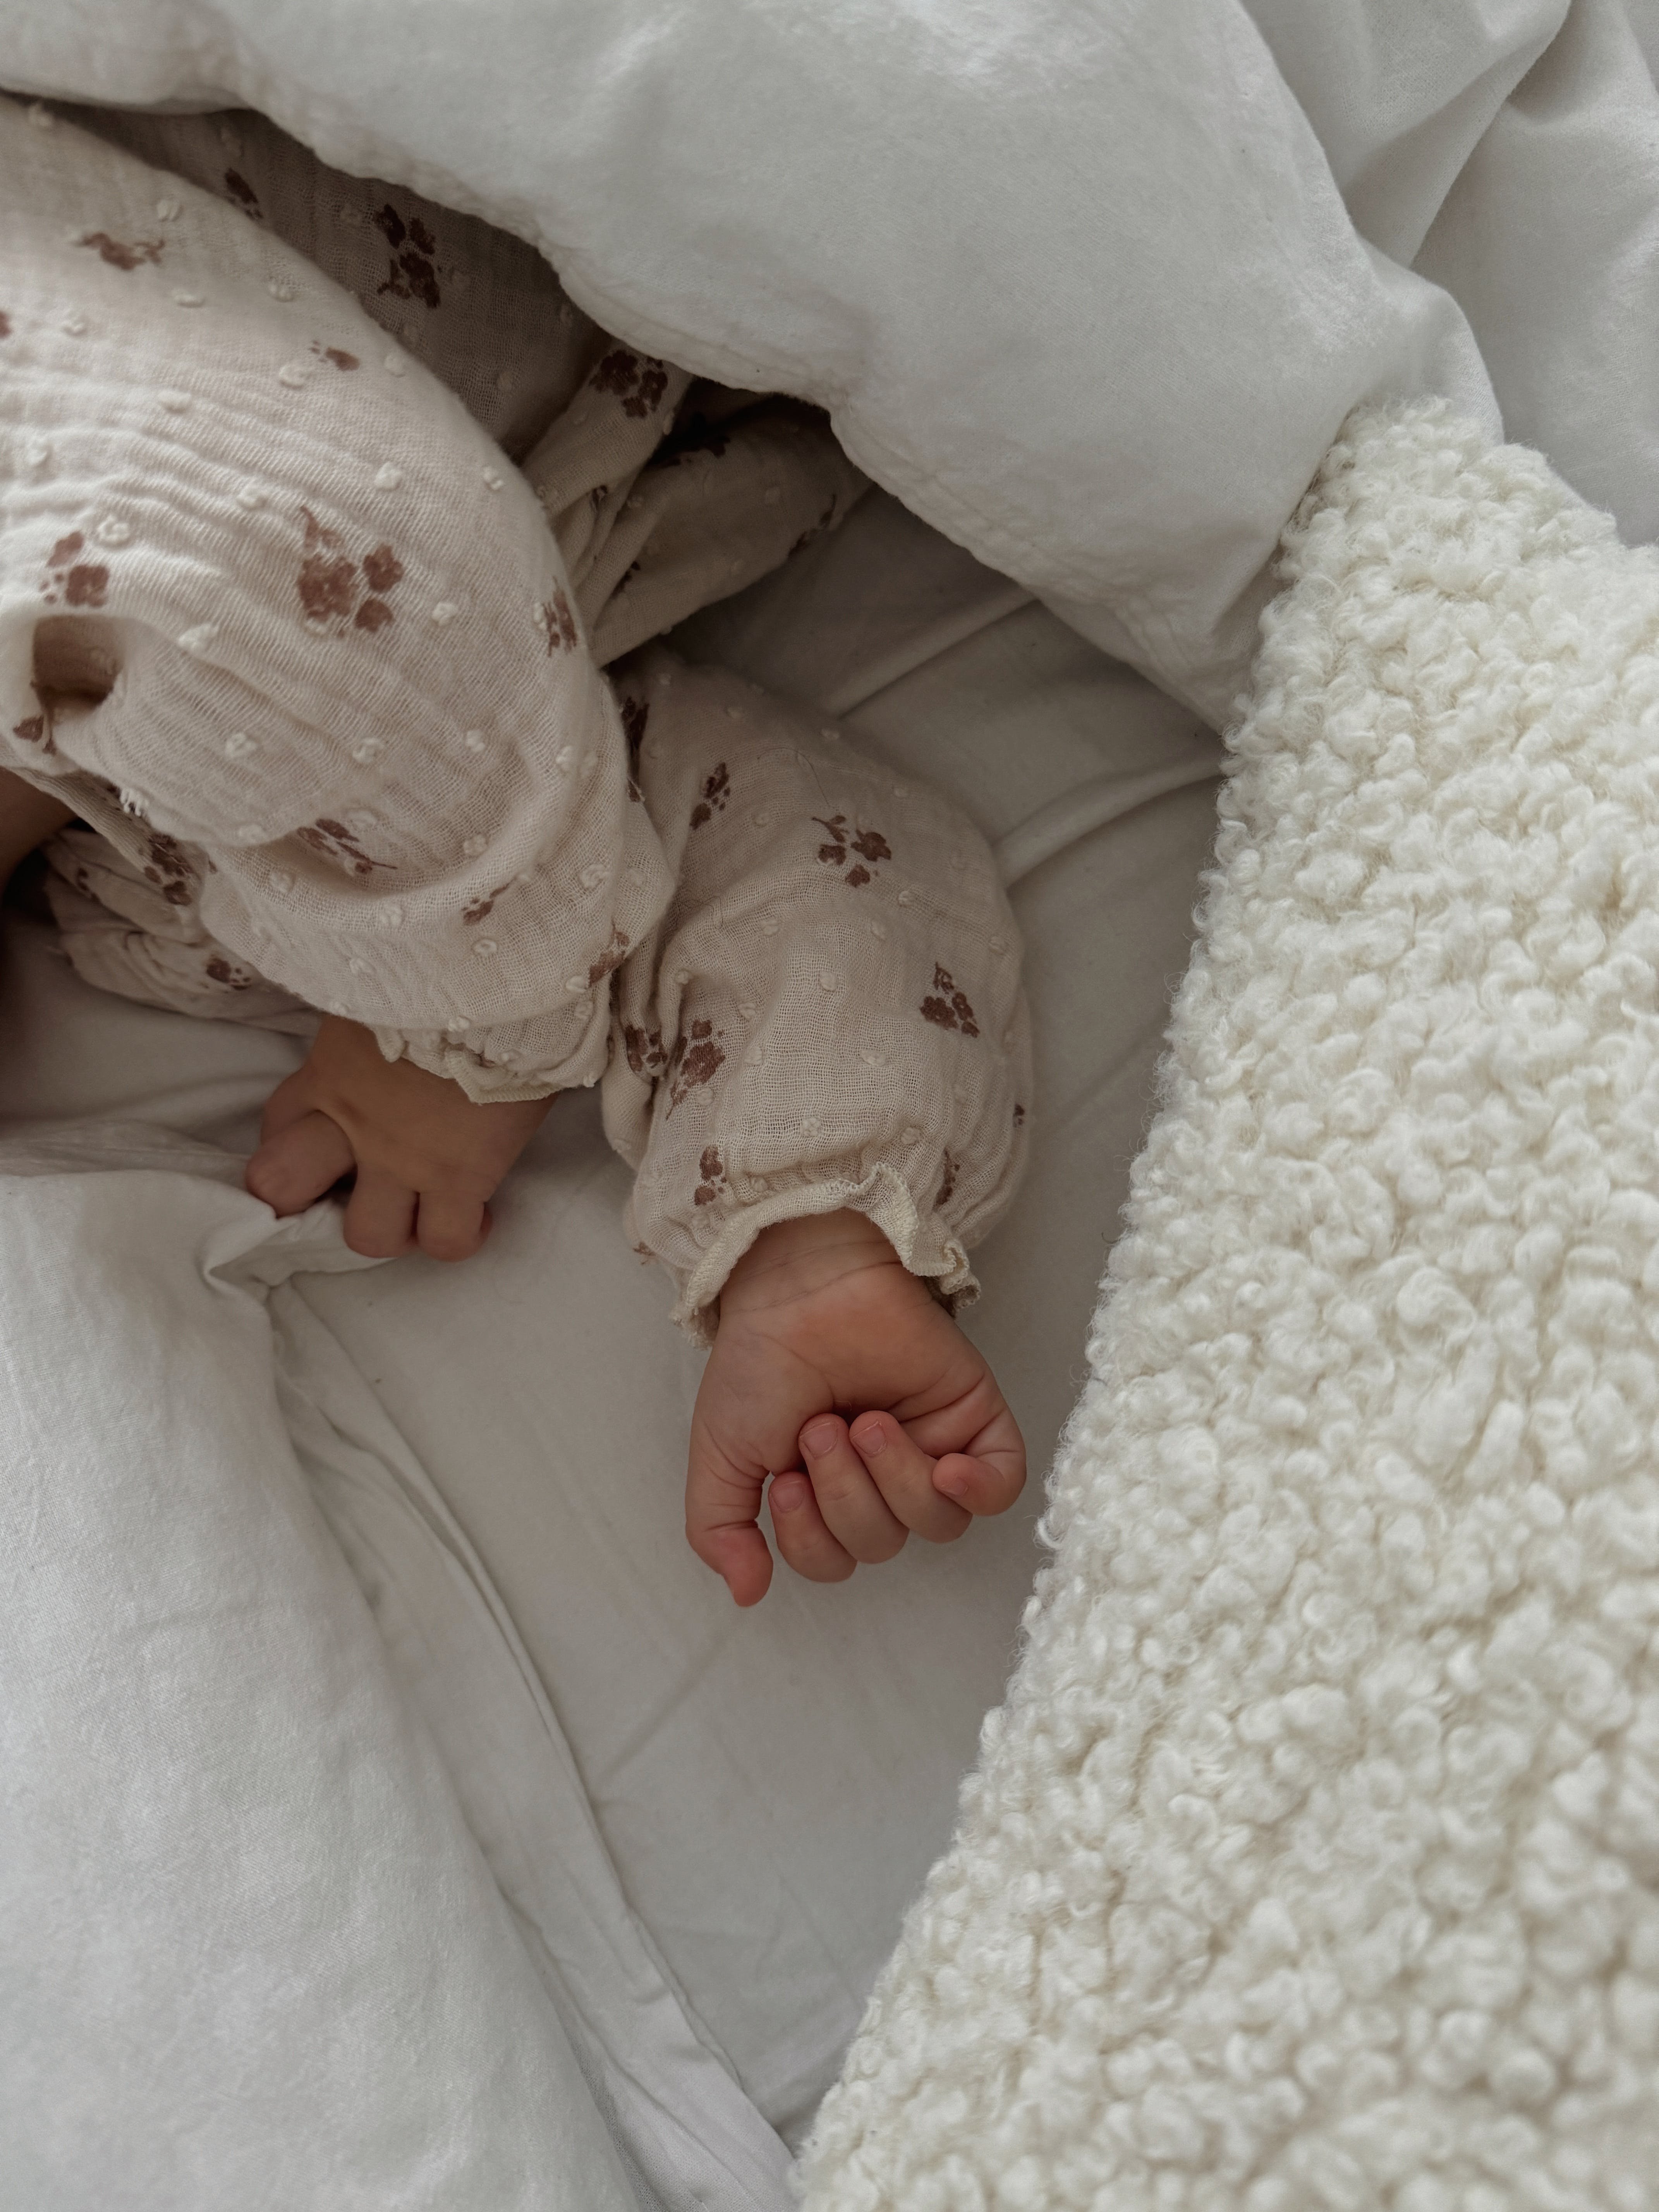 Die Hände eines Babys, das in einem Kinderbettchen schläft | Quelle: Pexels